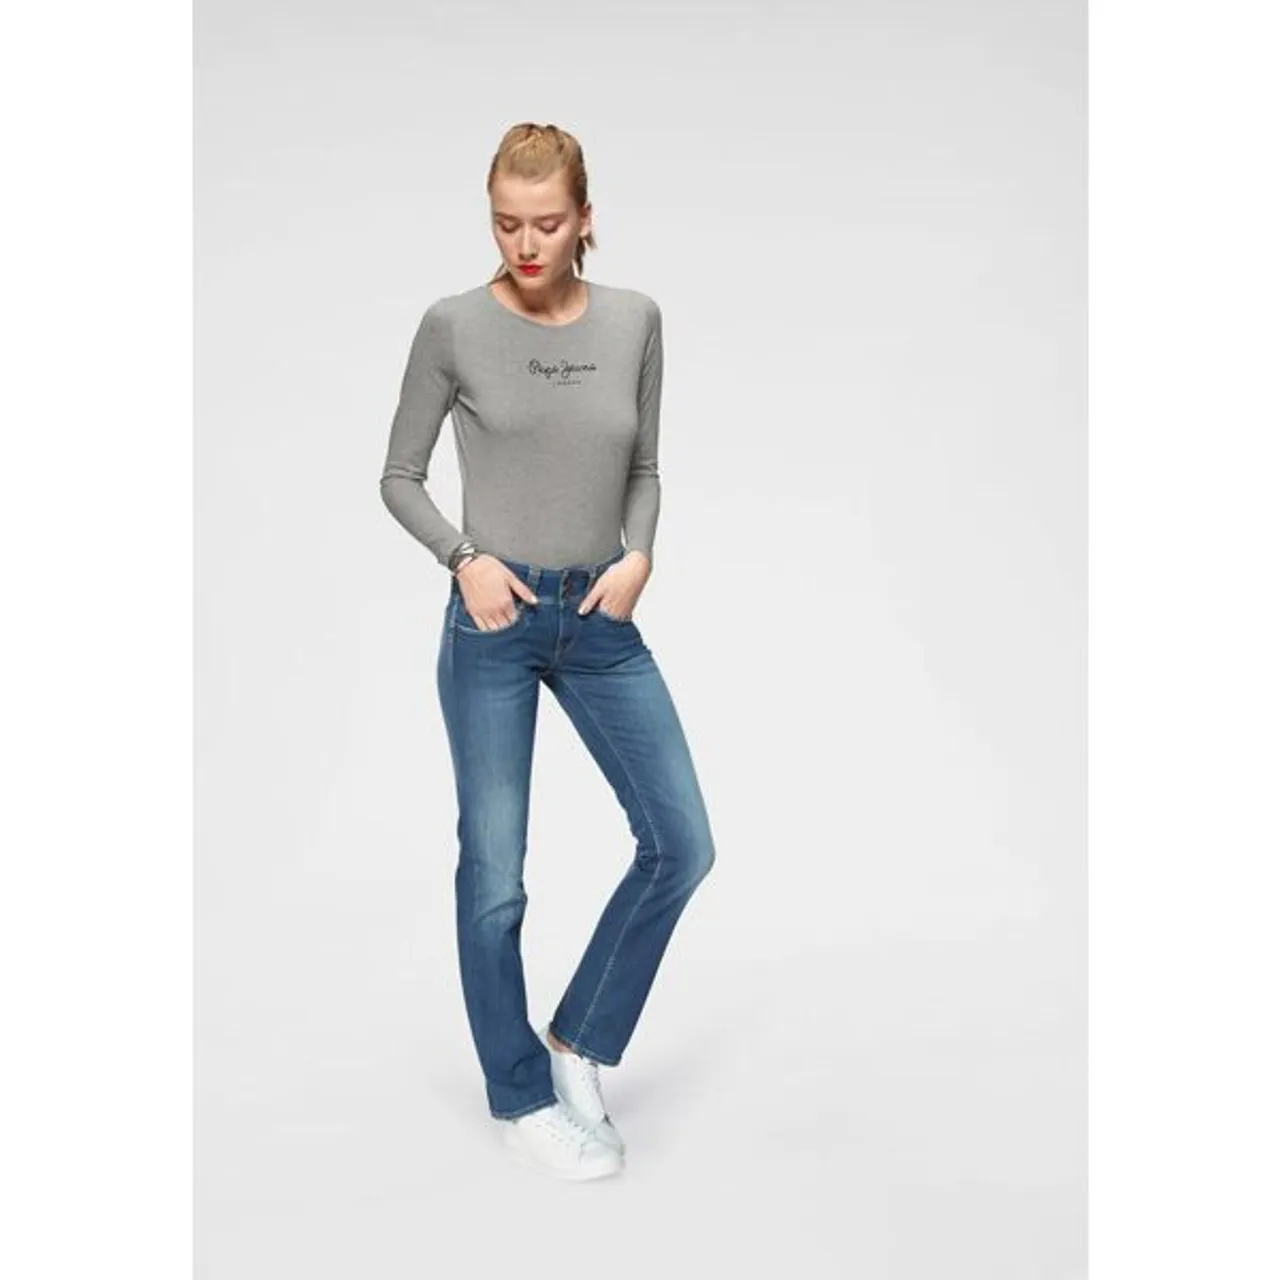 Straight-Jeans PEPE JEANS "GEN" Gr. 25, Länge 32, blau (royal dark) Damen Jeans Röhrenjeans